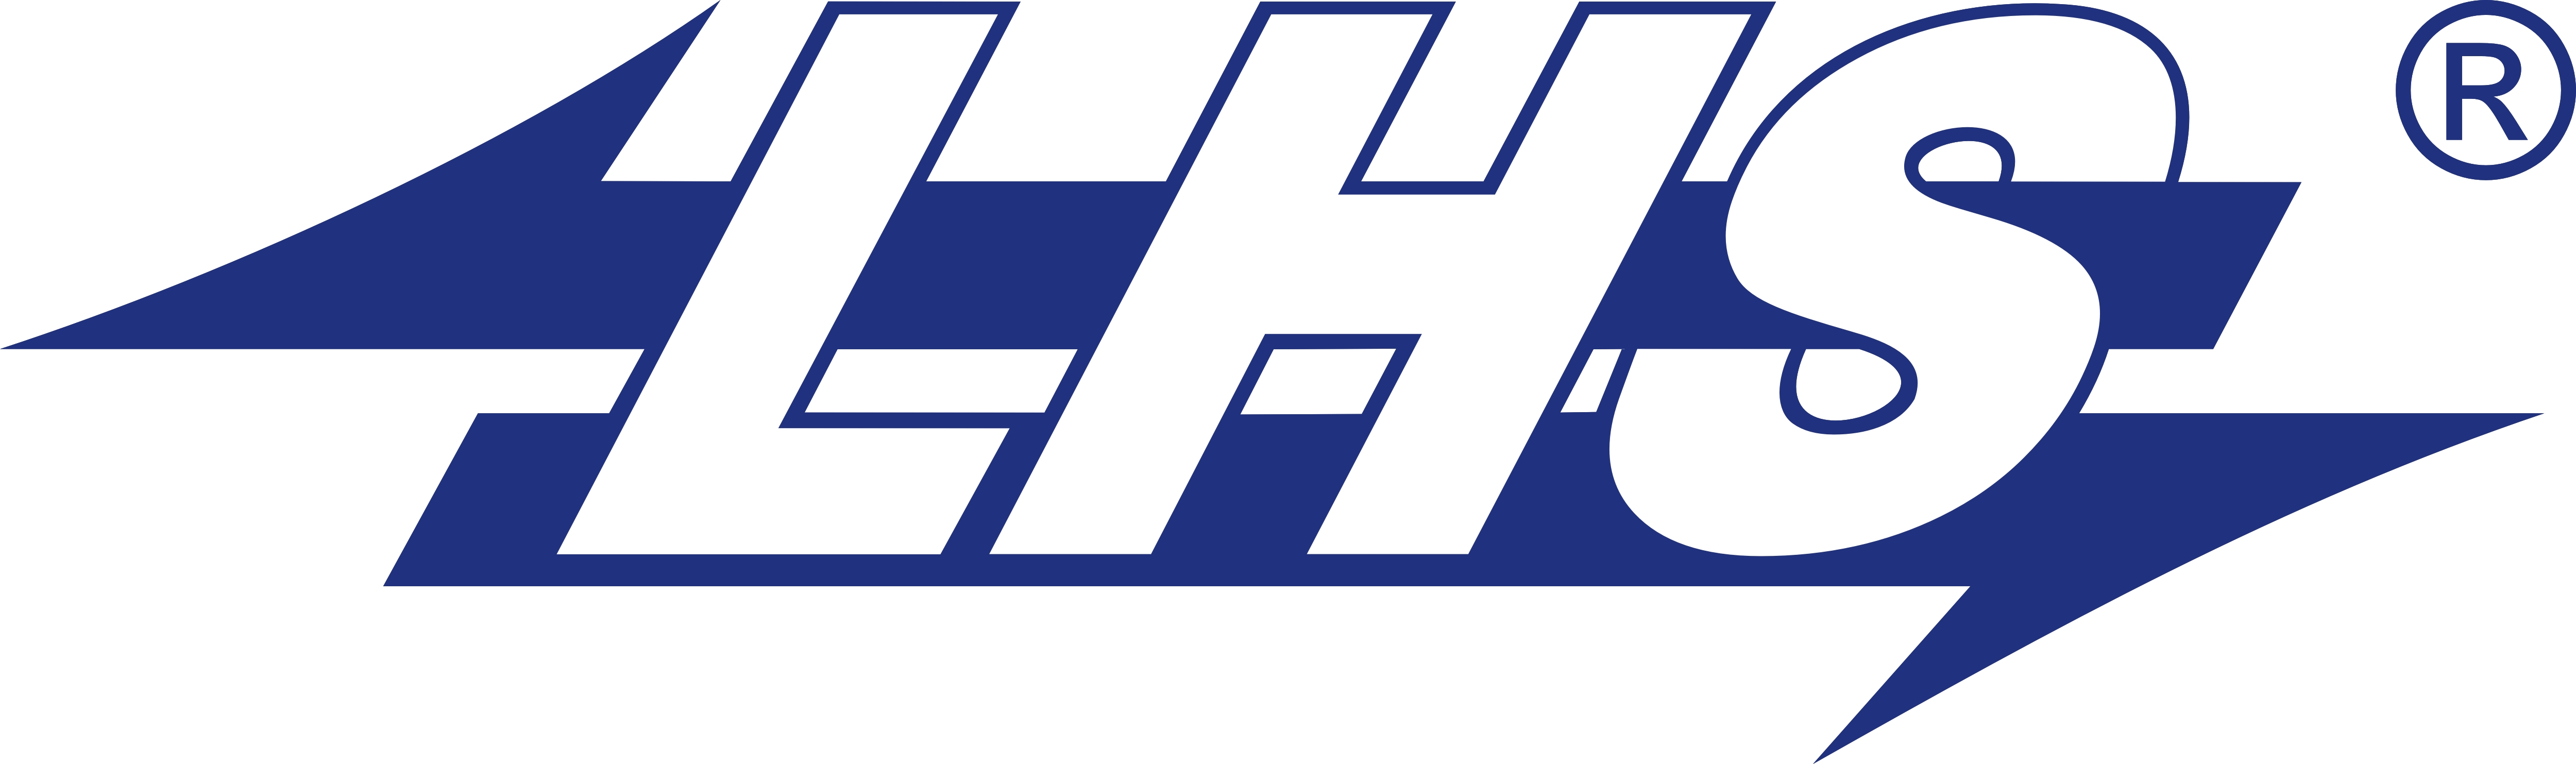 LHS_logo2.jpg